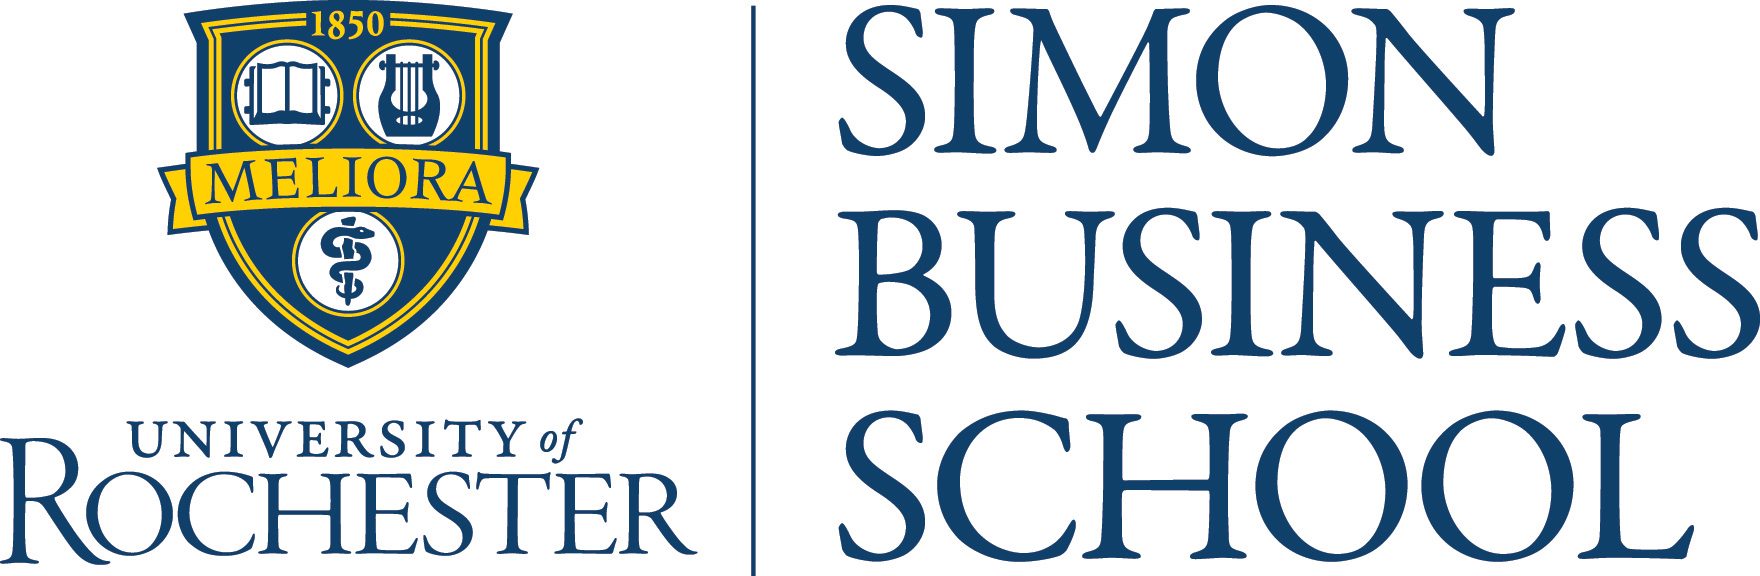 Simon Business School  Simon Business School